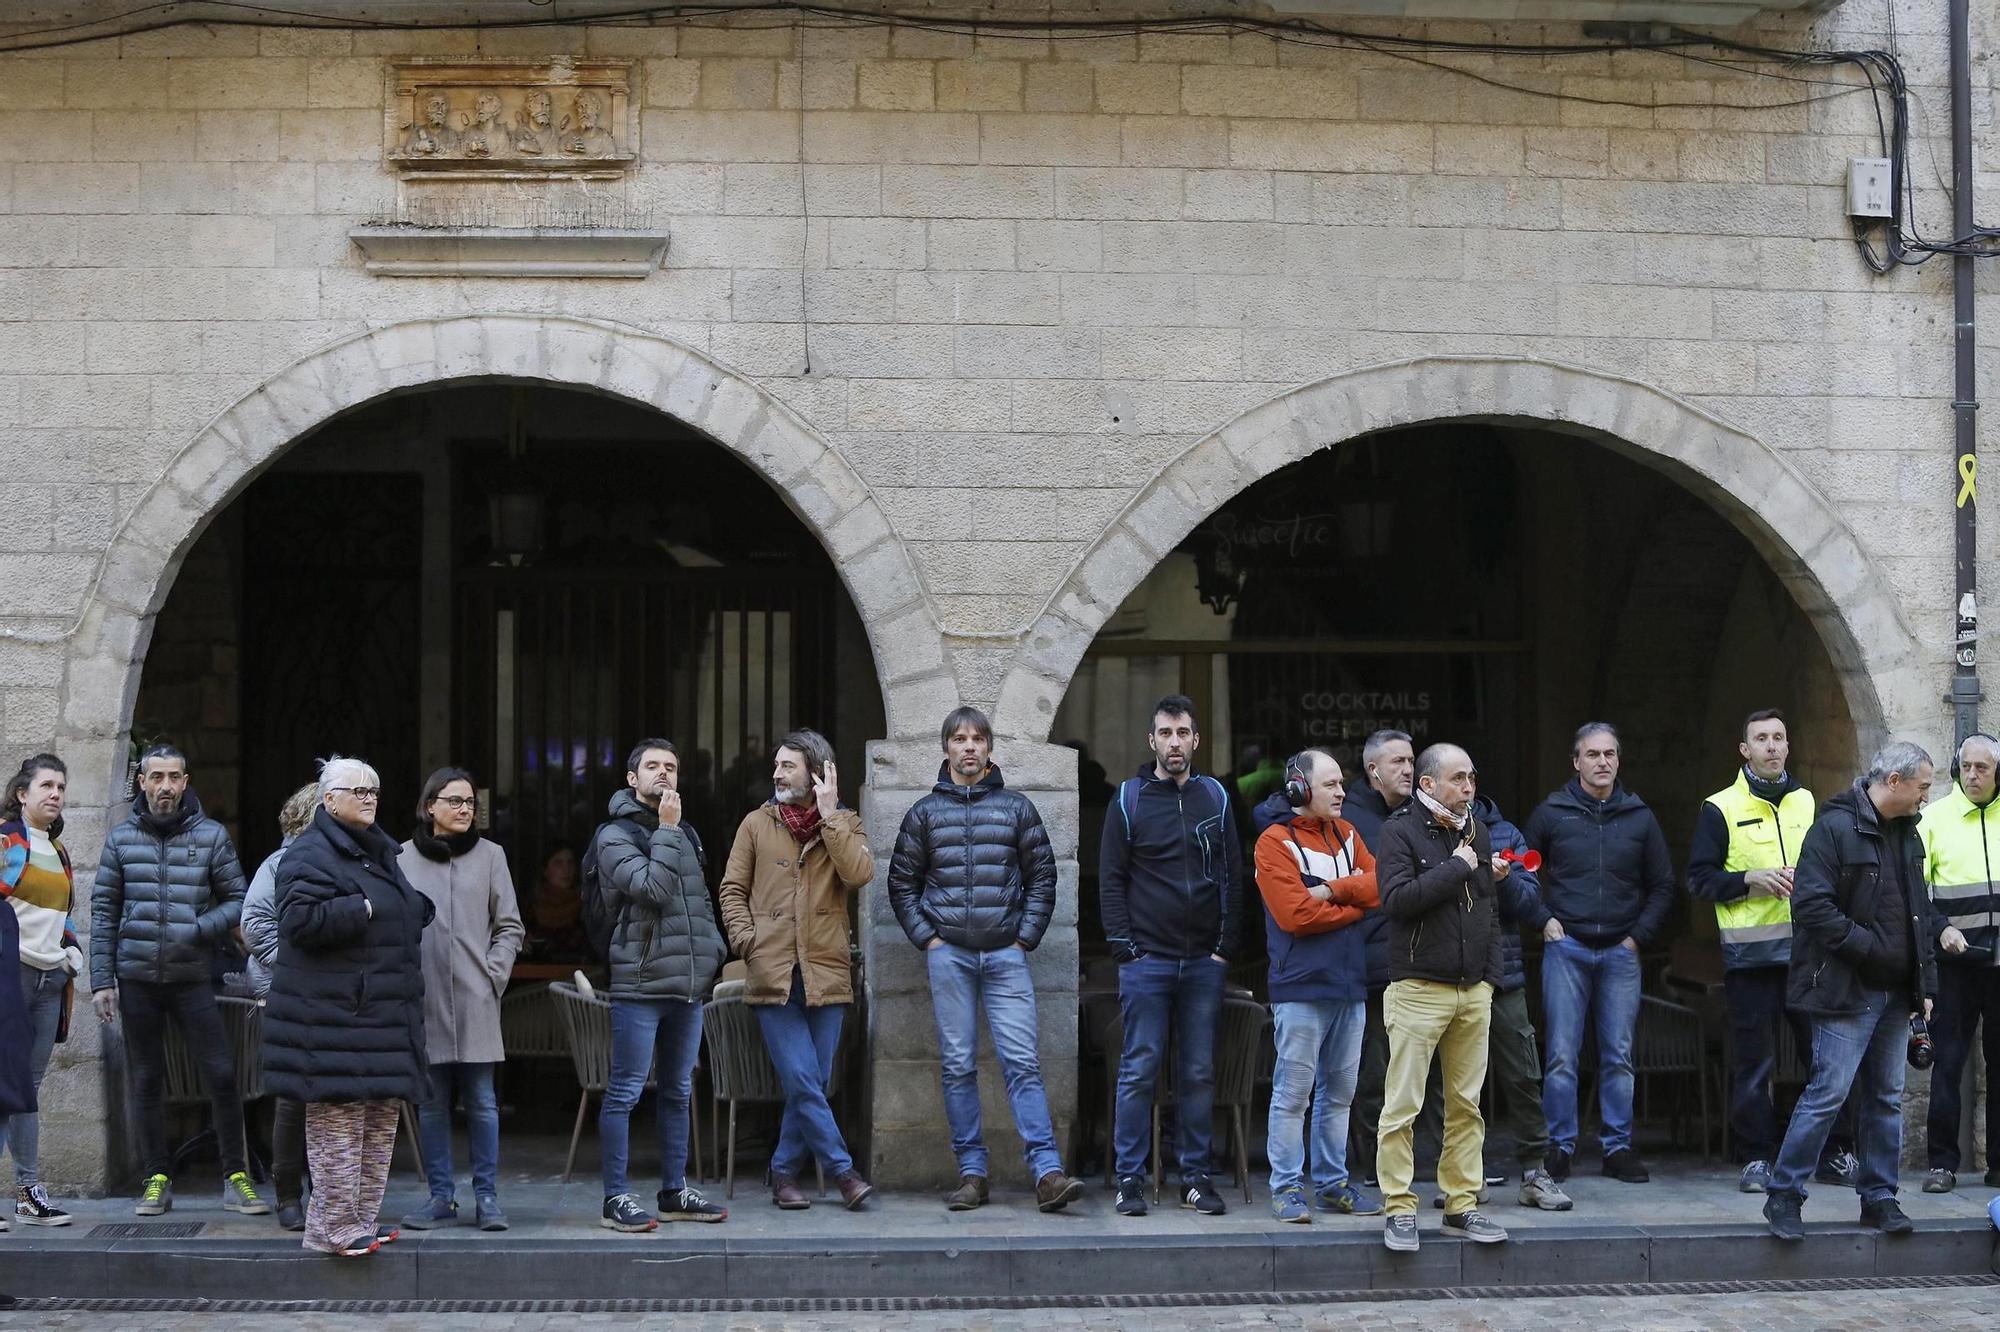 Treballadors municipals de Girona reprenen les mobilitzacions sorolloses a la plaça del Vi